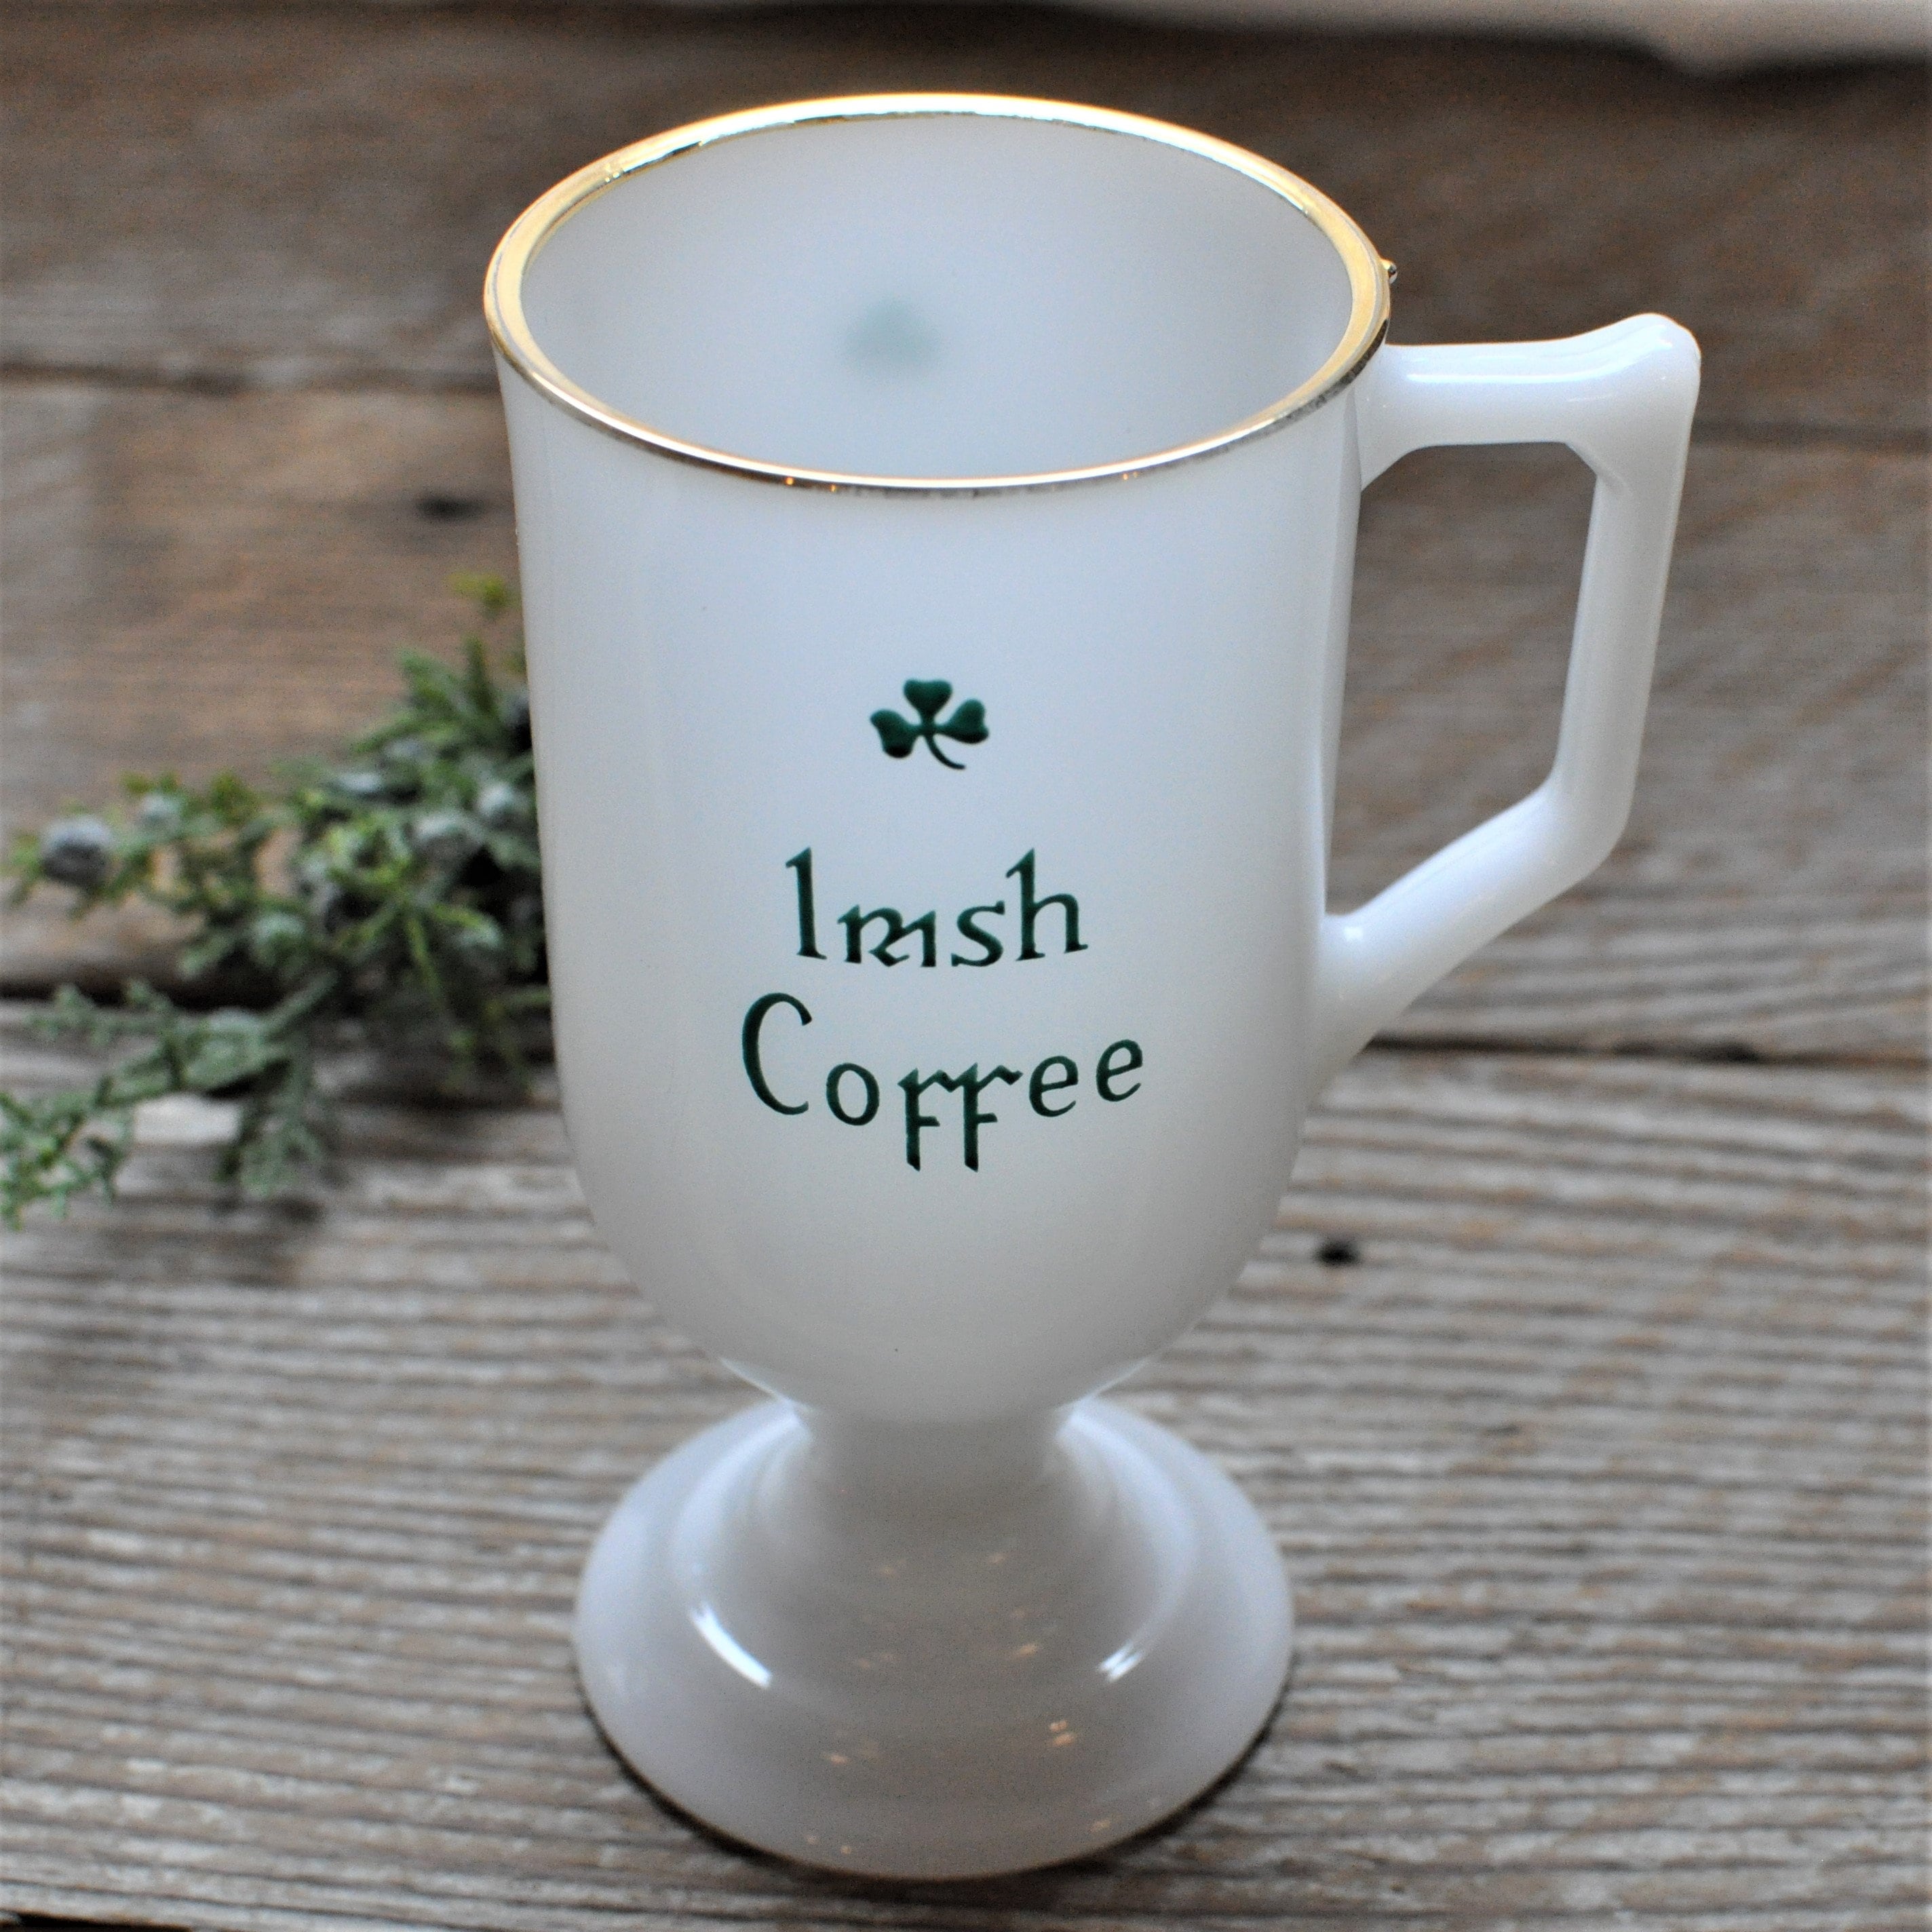 Irish Coffee Mug + Reviews